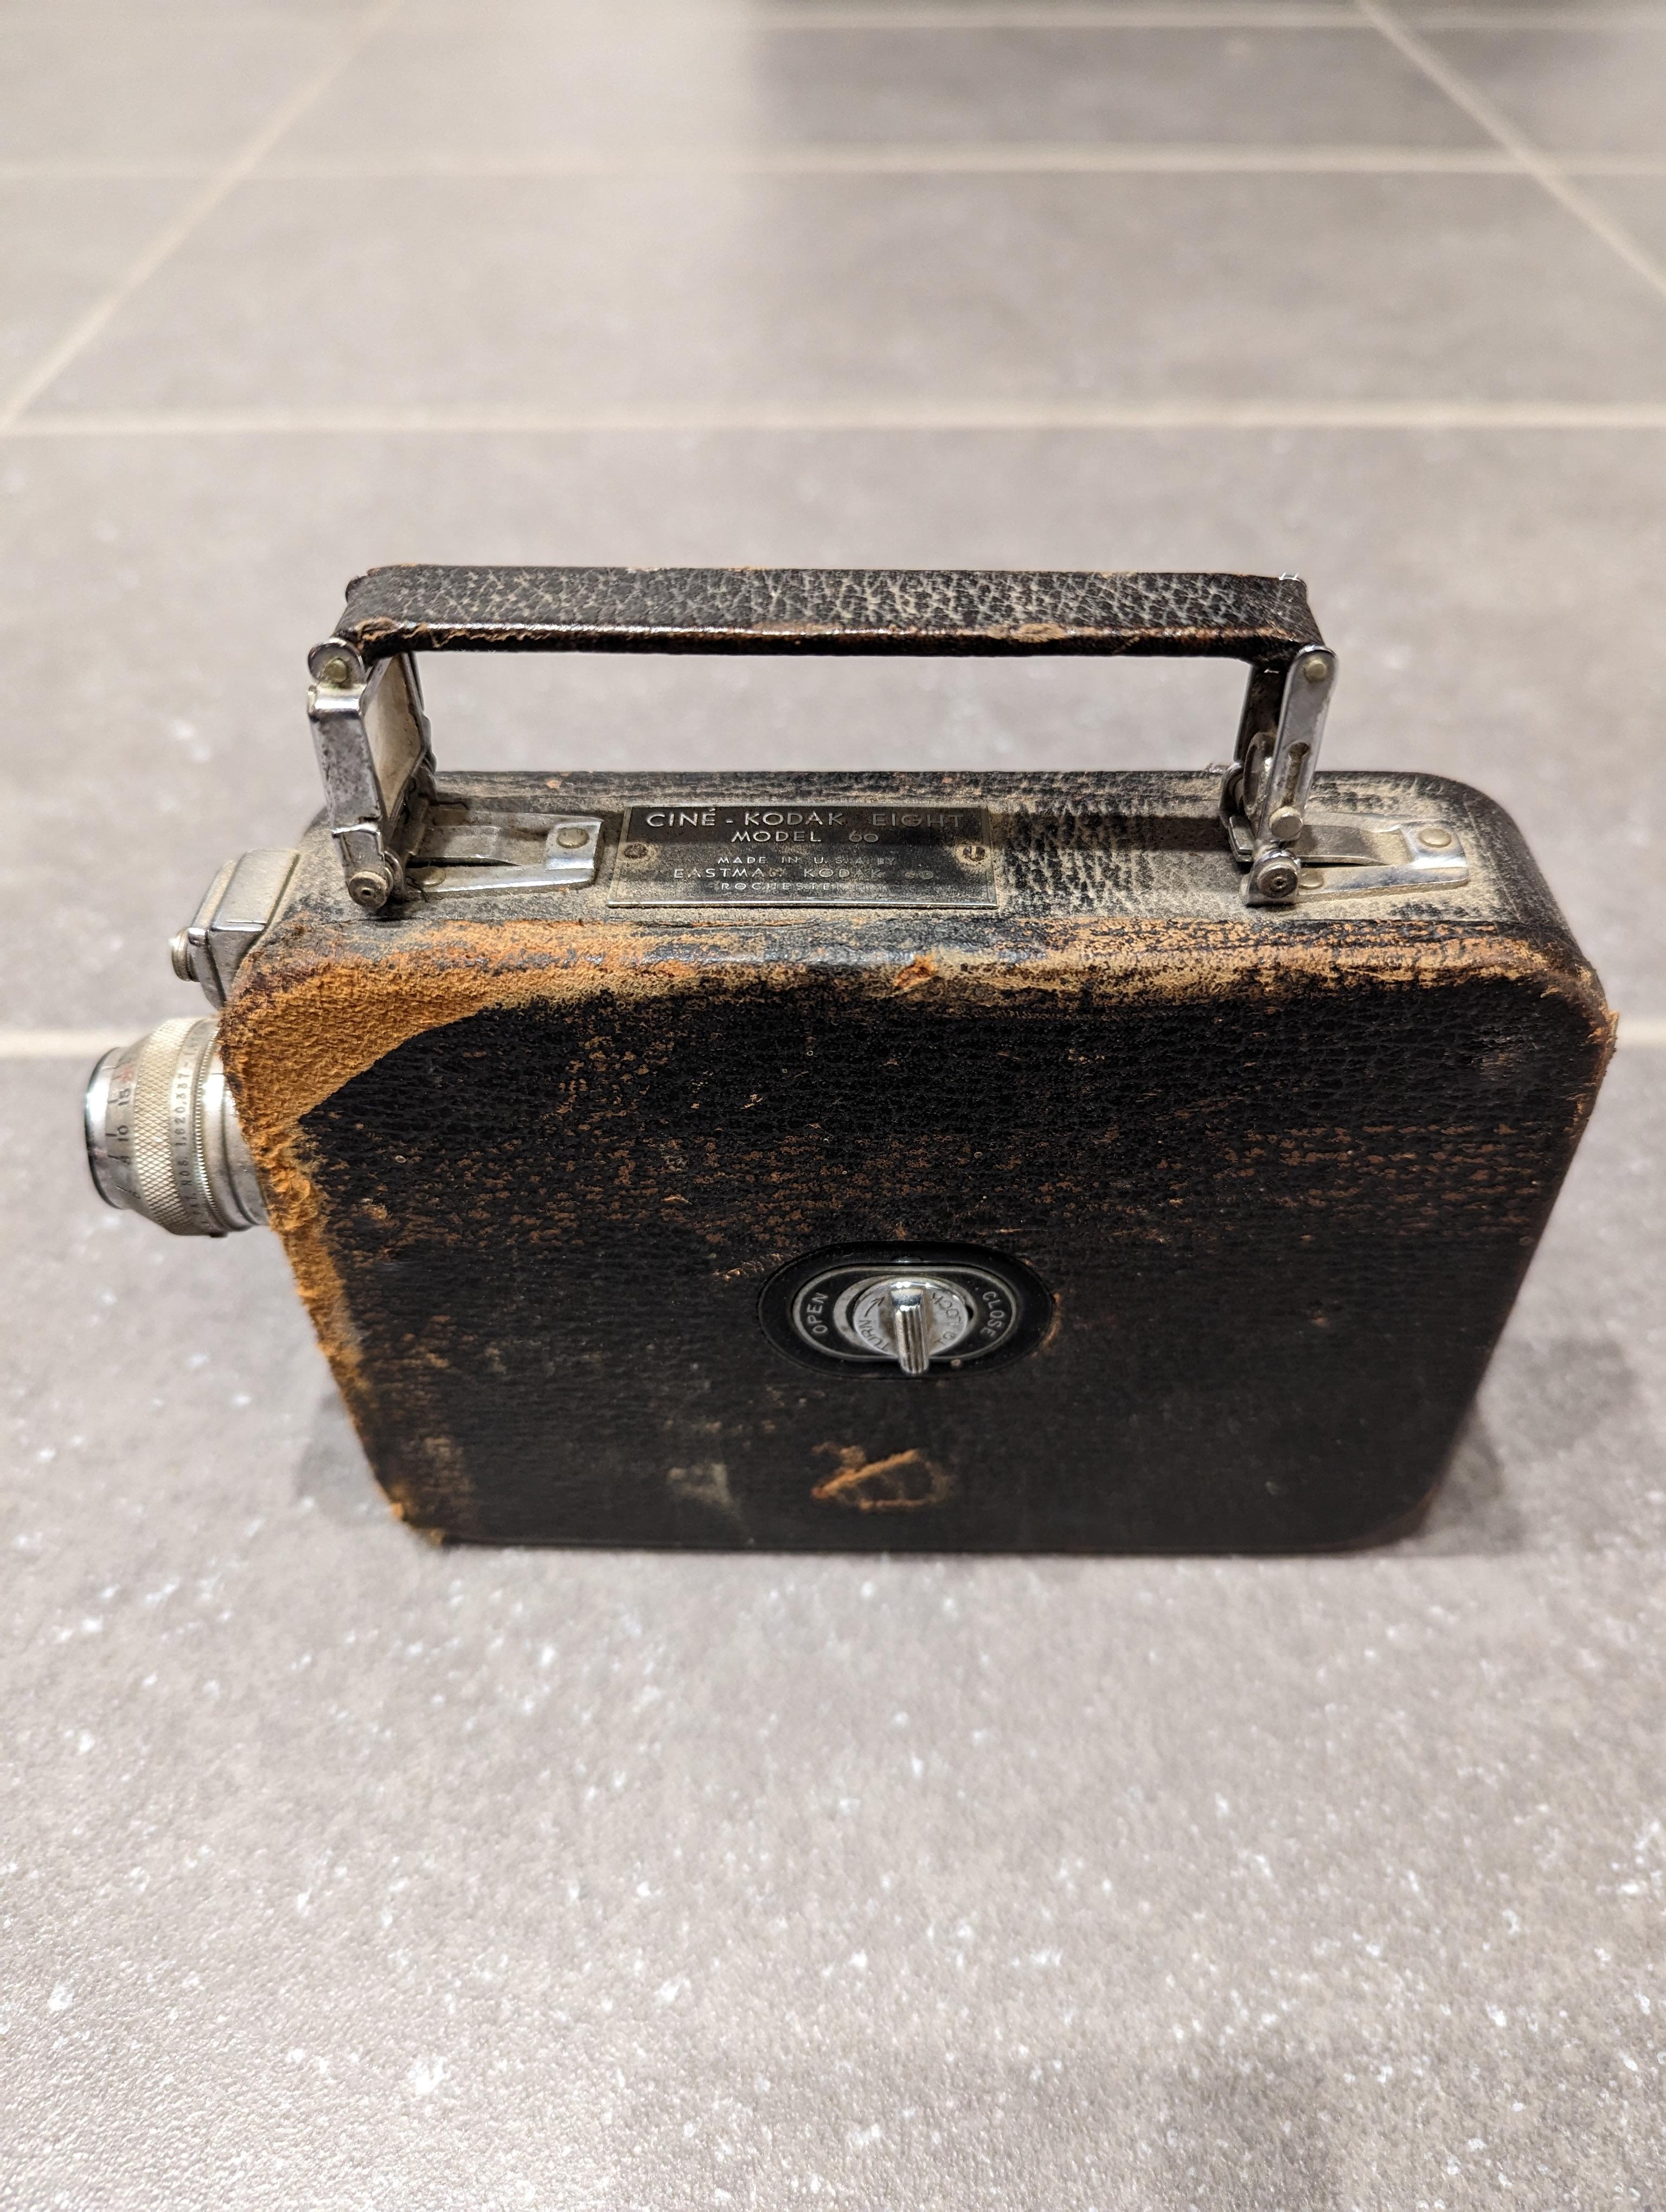 Caméra 8mm Kodak vintage de 1920.

Mauvais état, bien utilisé. Pièce décorative intéressante.